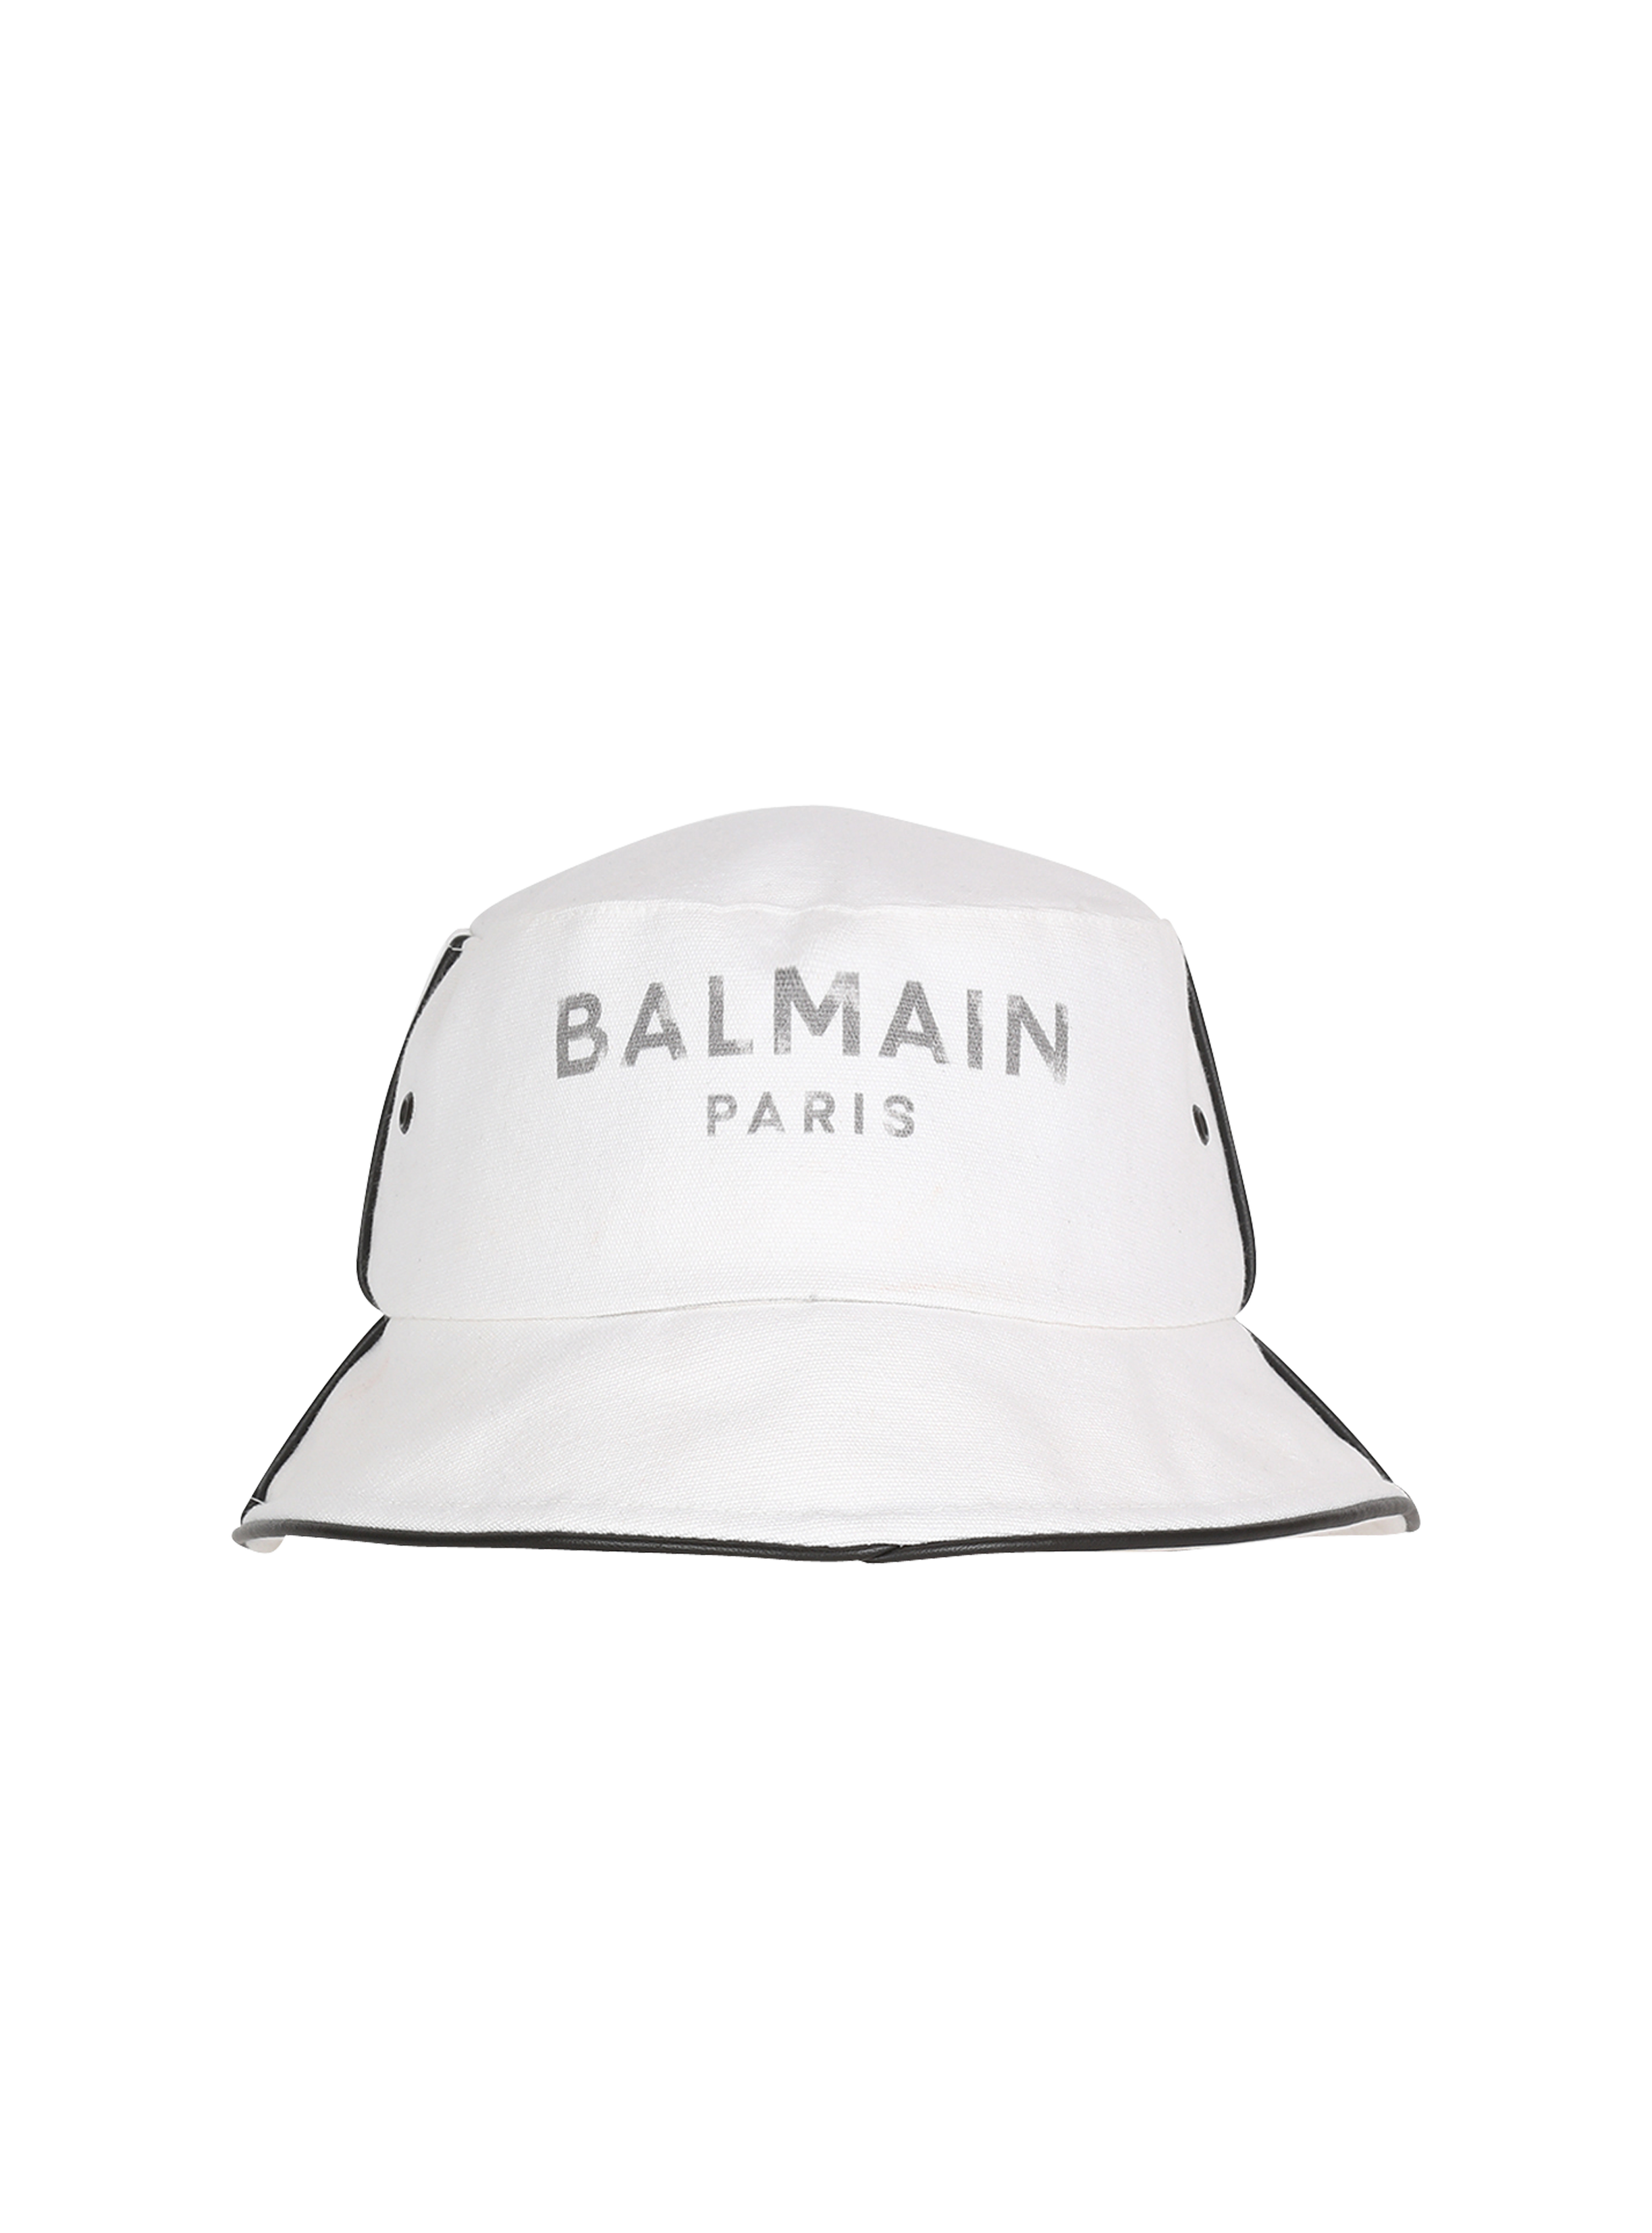 Balmain Women's Collection | BALMAIN